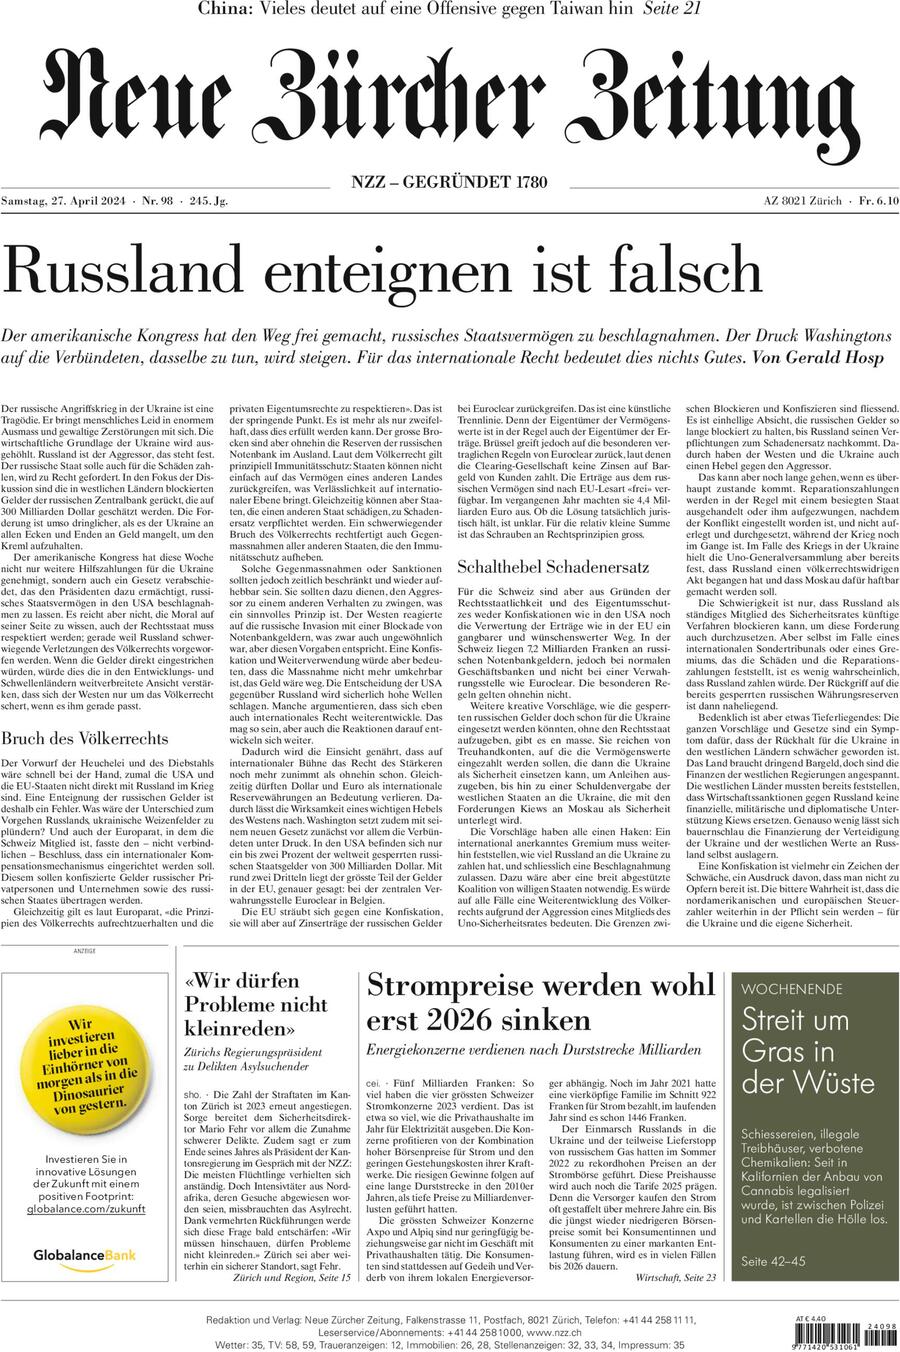 Prima Pagina NZZ (Neue Zürcher Zeitung) 27/04/2024